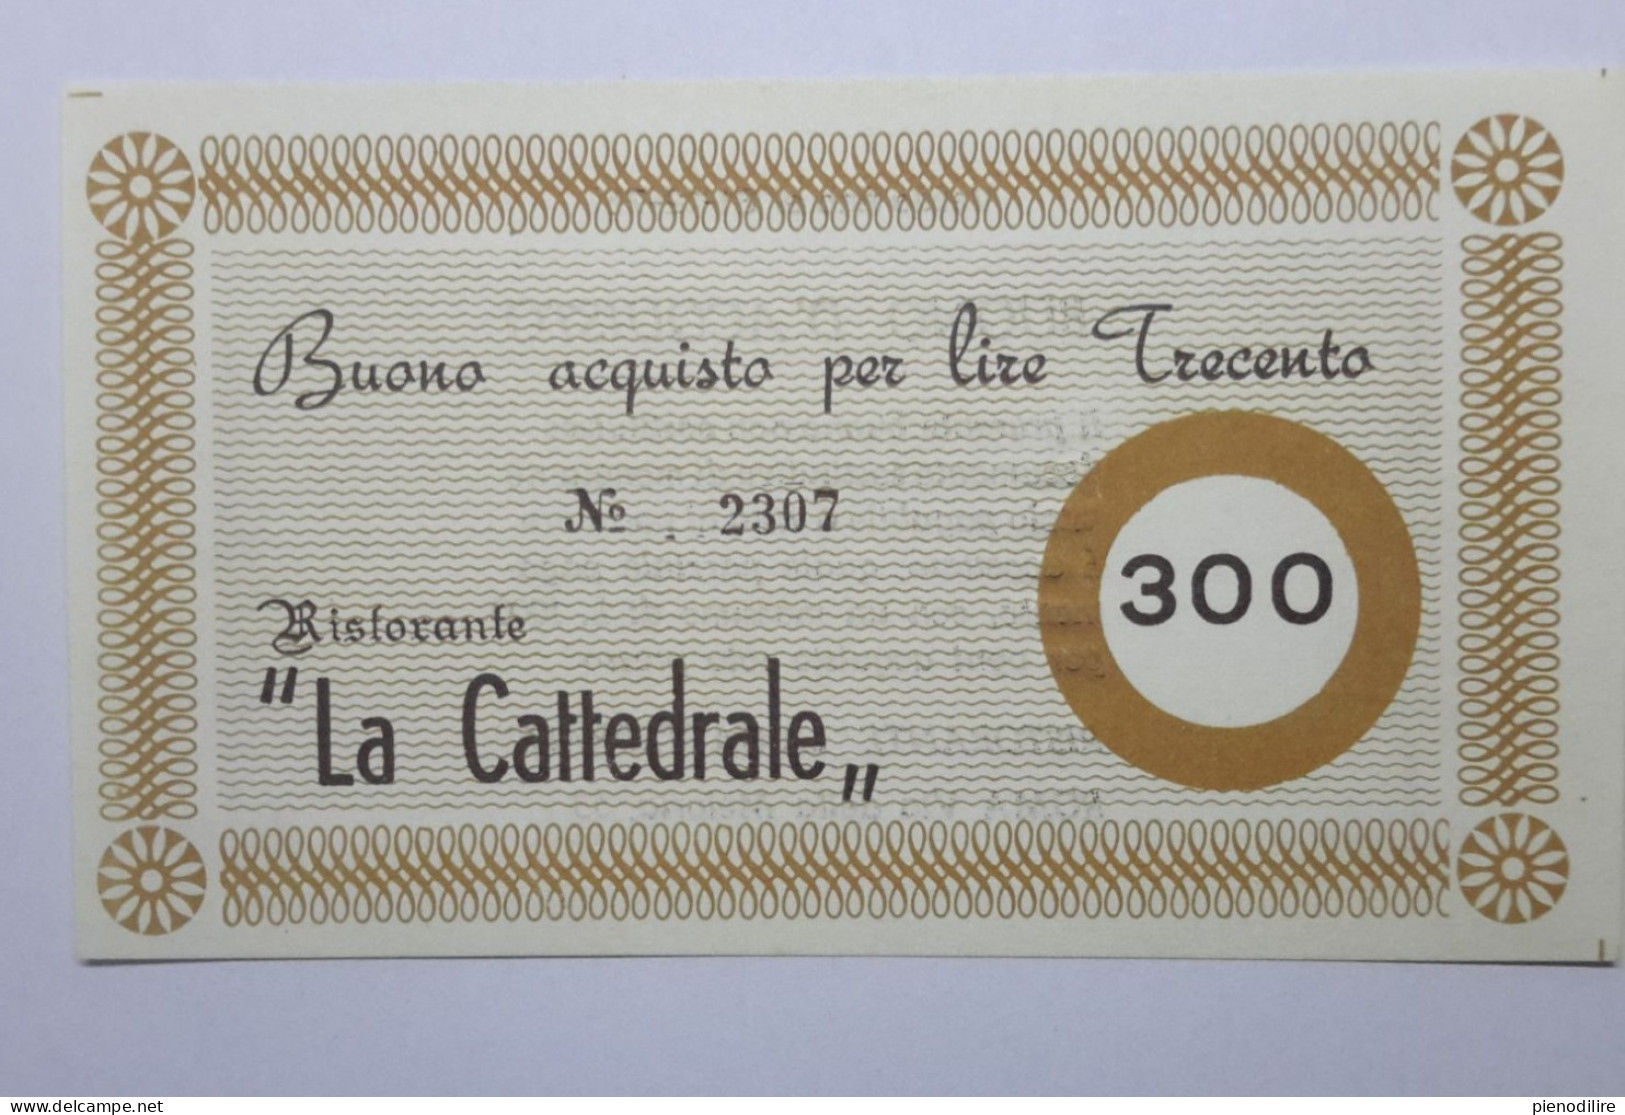 LOTTO 4Pz. 100 200 300 400 LIRE BUONI ACQUISTO RISTORANTE LA CATTEDRALE ROMA VALIDO FINO AL 31.12.1976 (A.4) - [10] Scheck Und Mini-Scheck